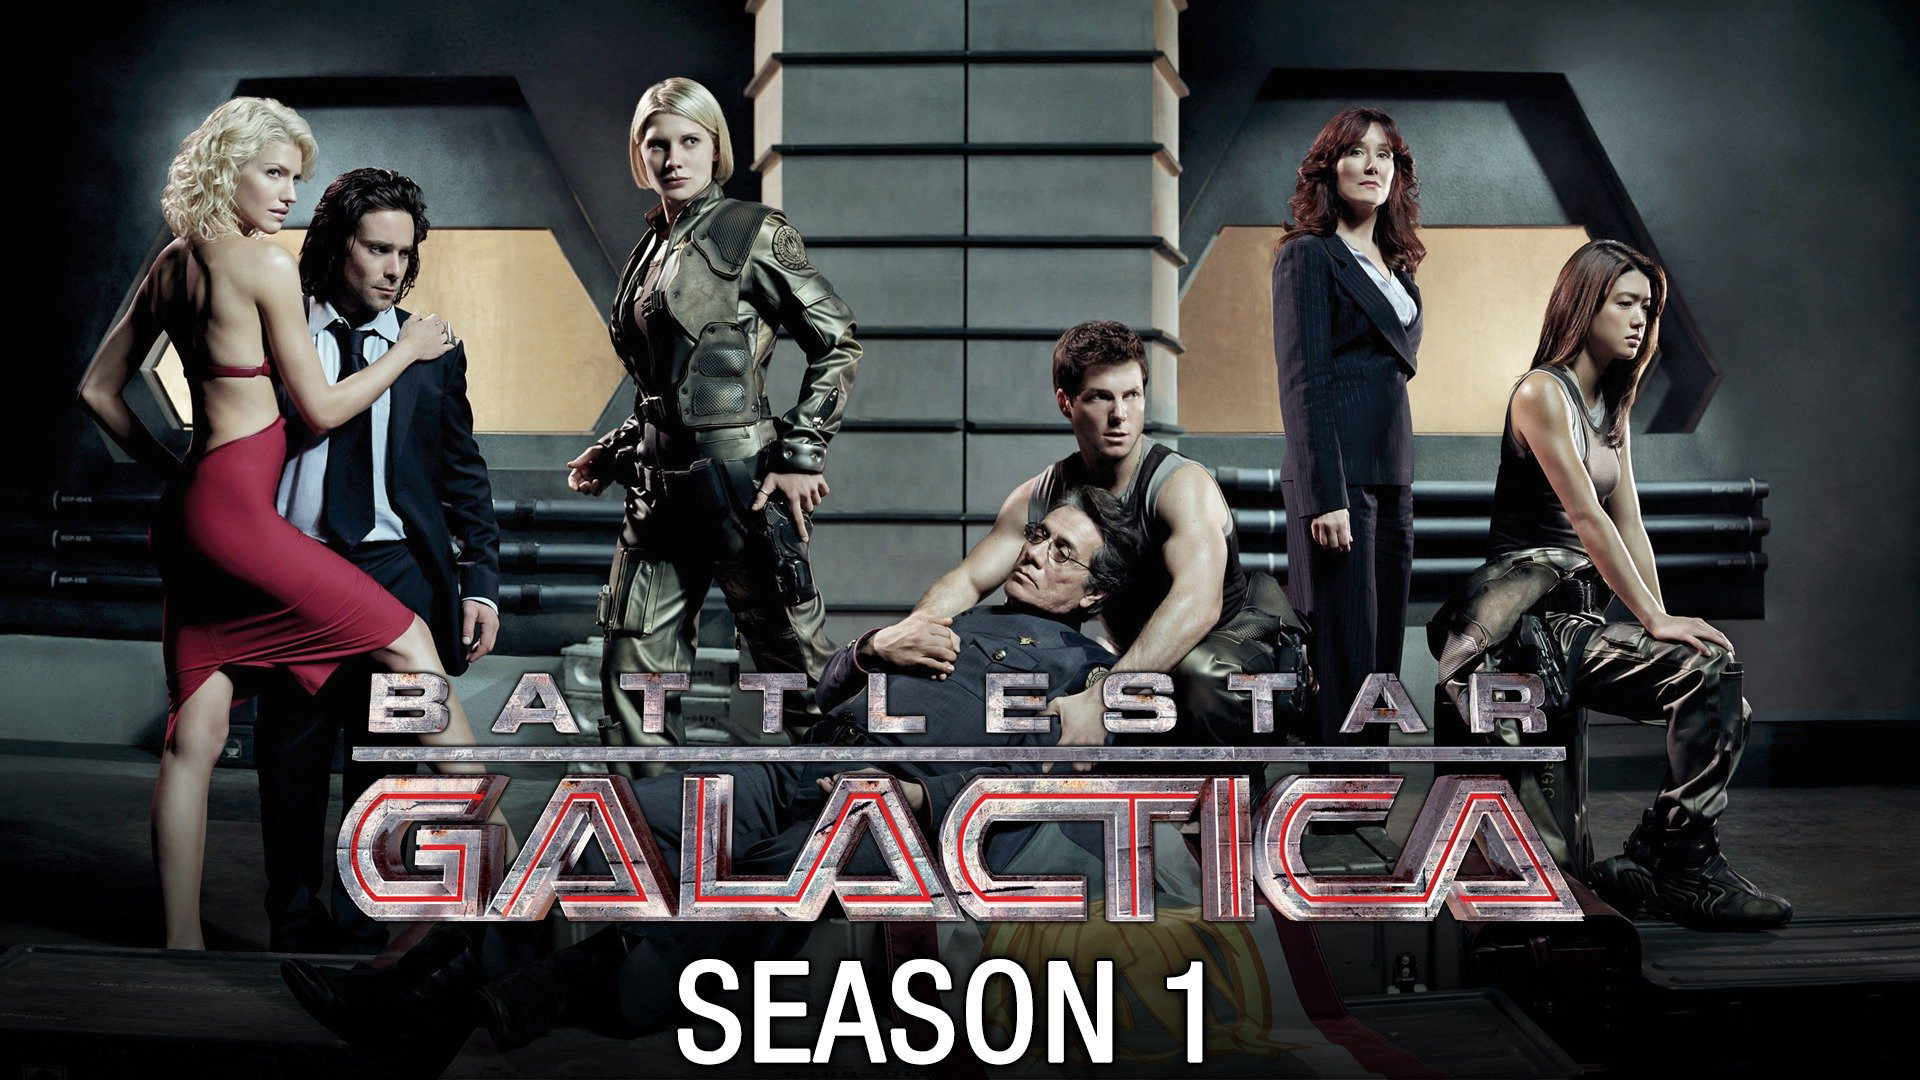 Tử Chiến Liên Hành Tinh: Phần 1 - Battlestar Galactica (Season 1) (2004)